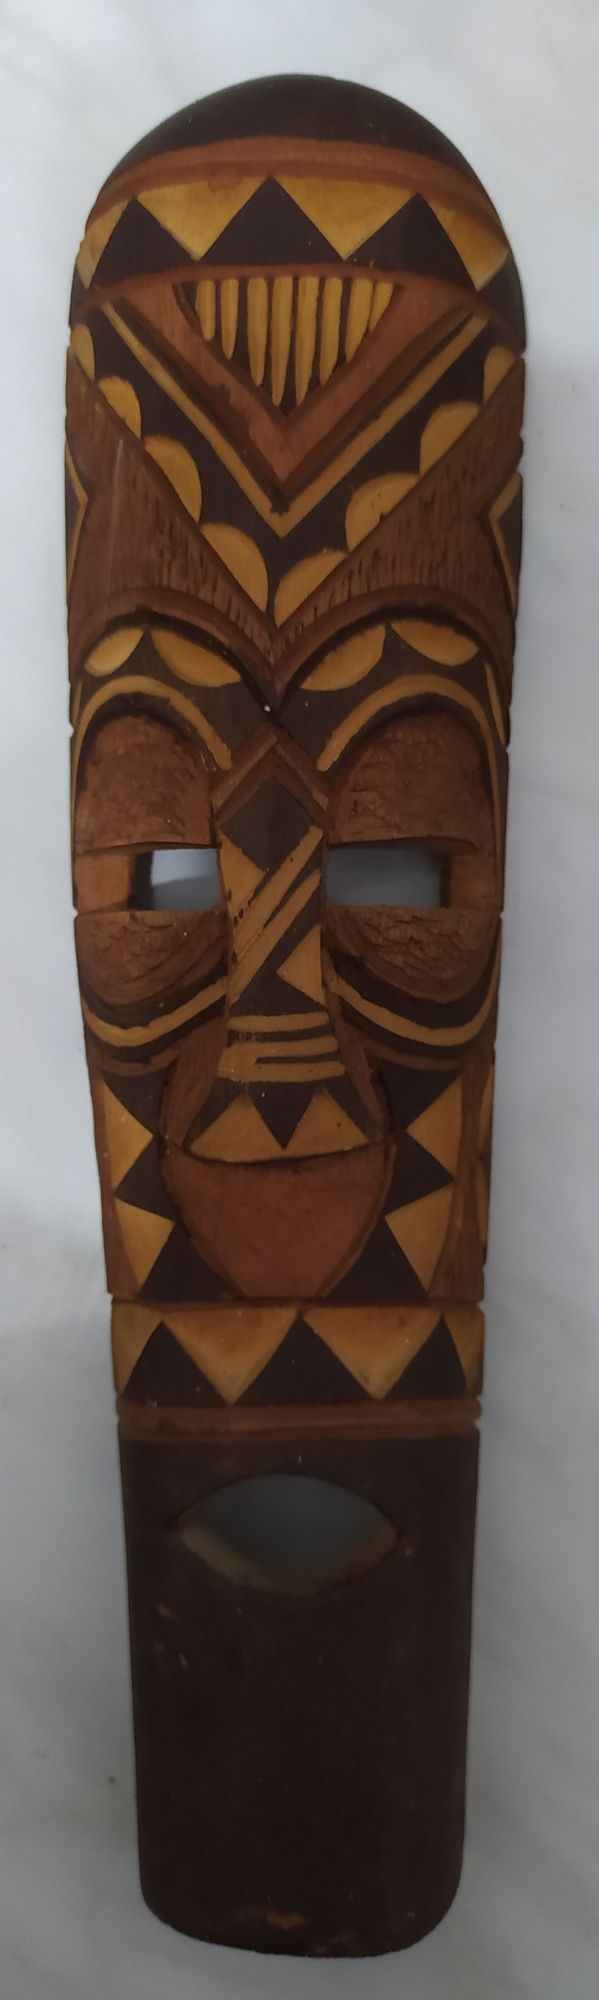 Деревянная африканская маска